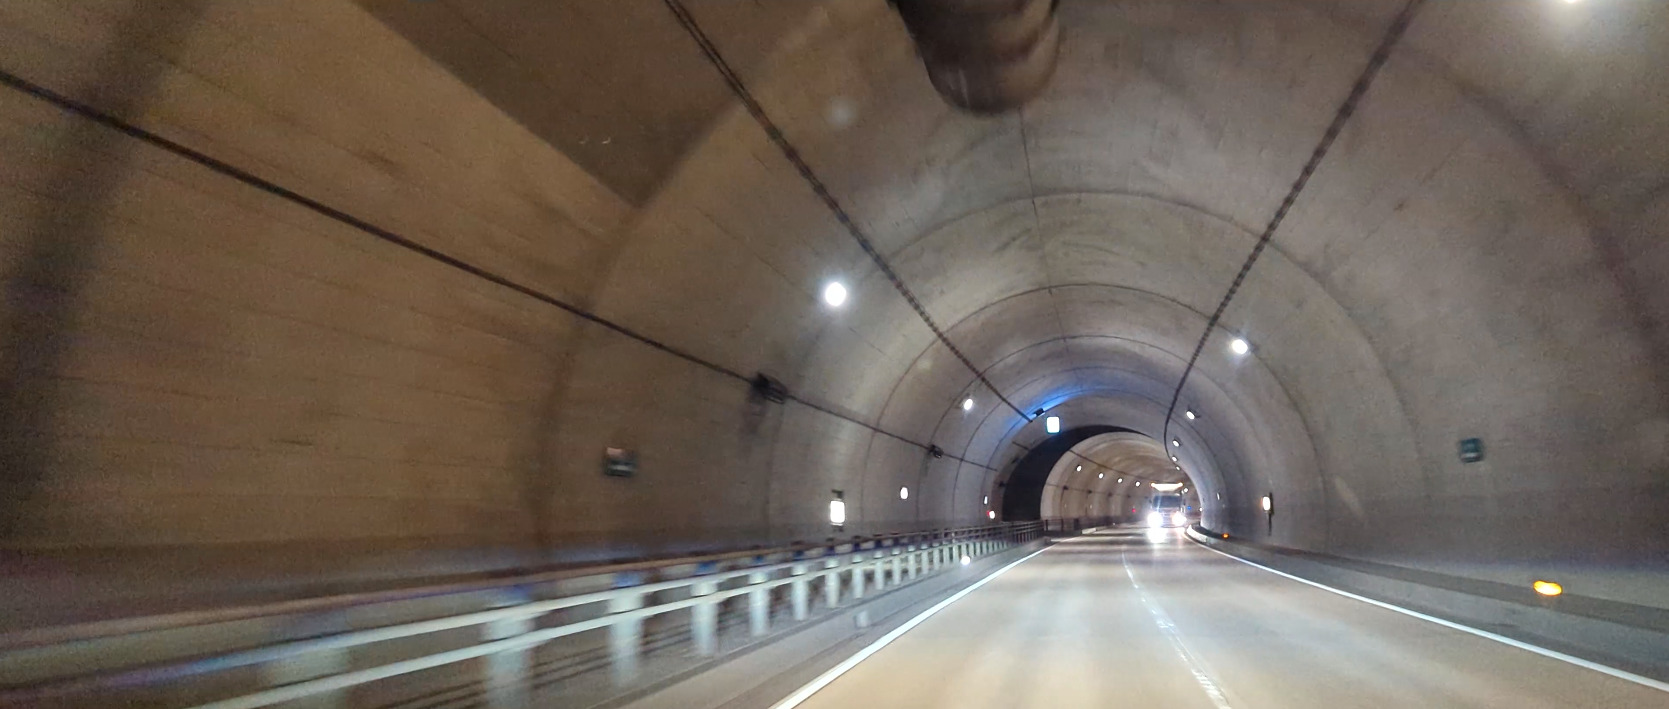 トンネル内車載撮影